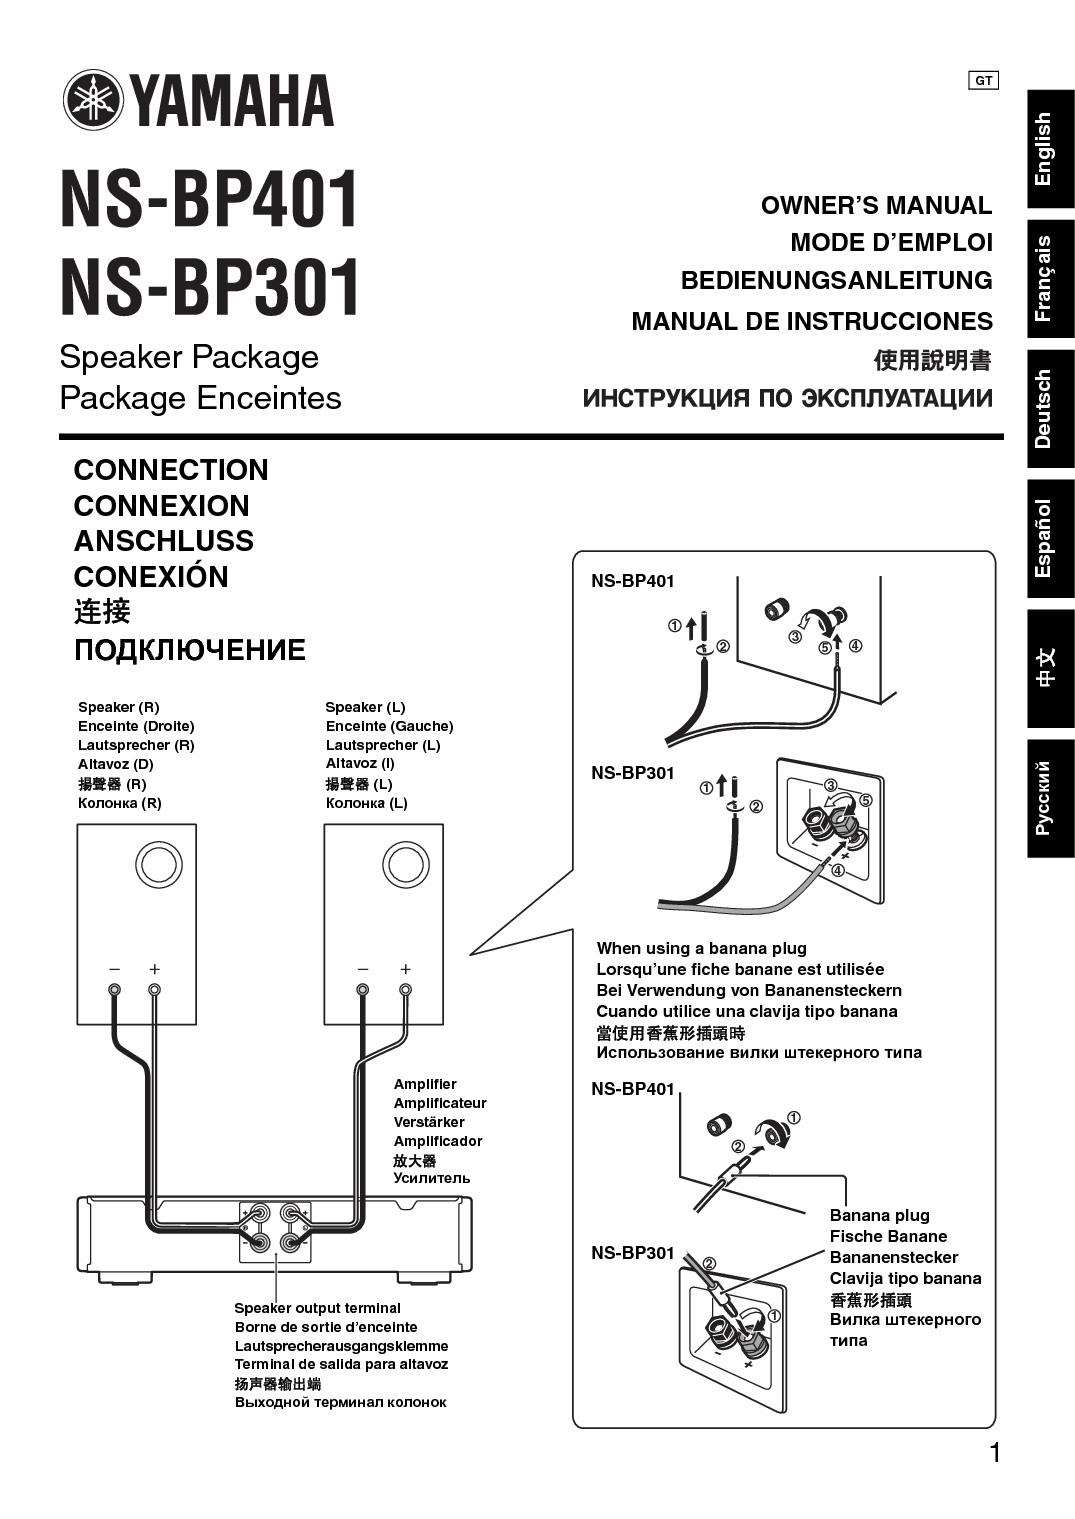 雅马哈 Yamaha NS-BP301 使用说明书 封面